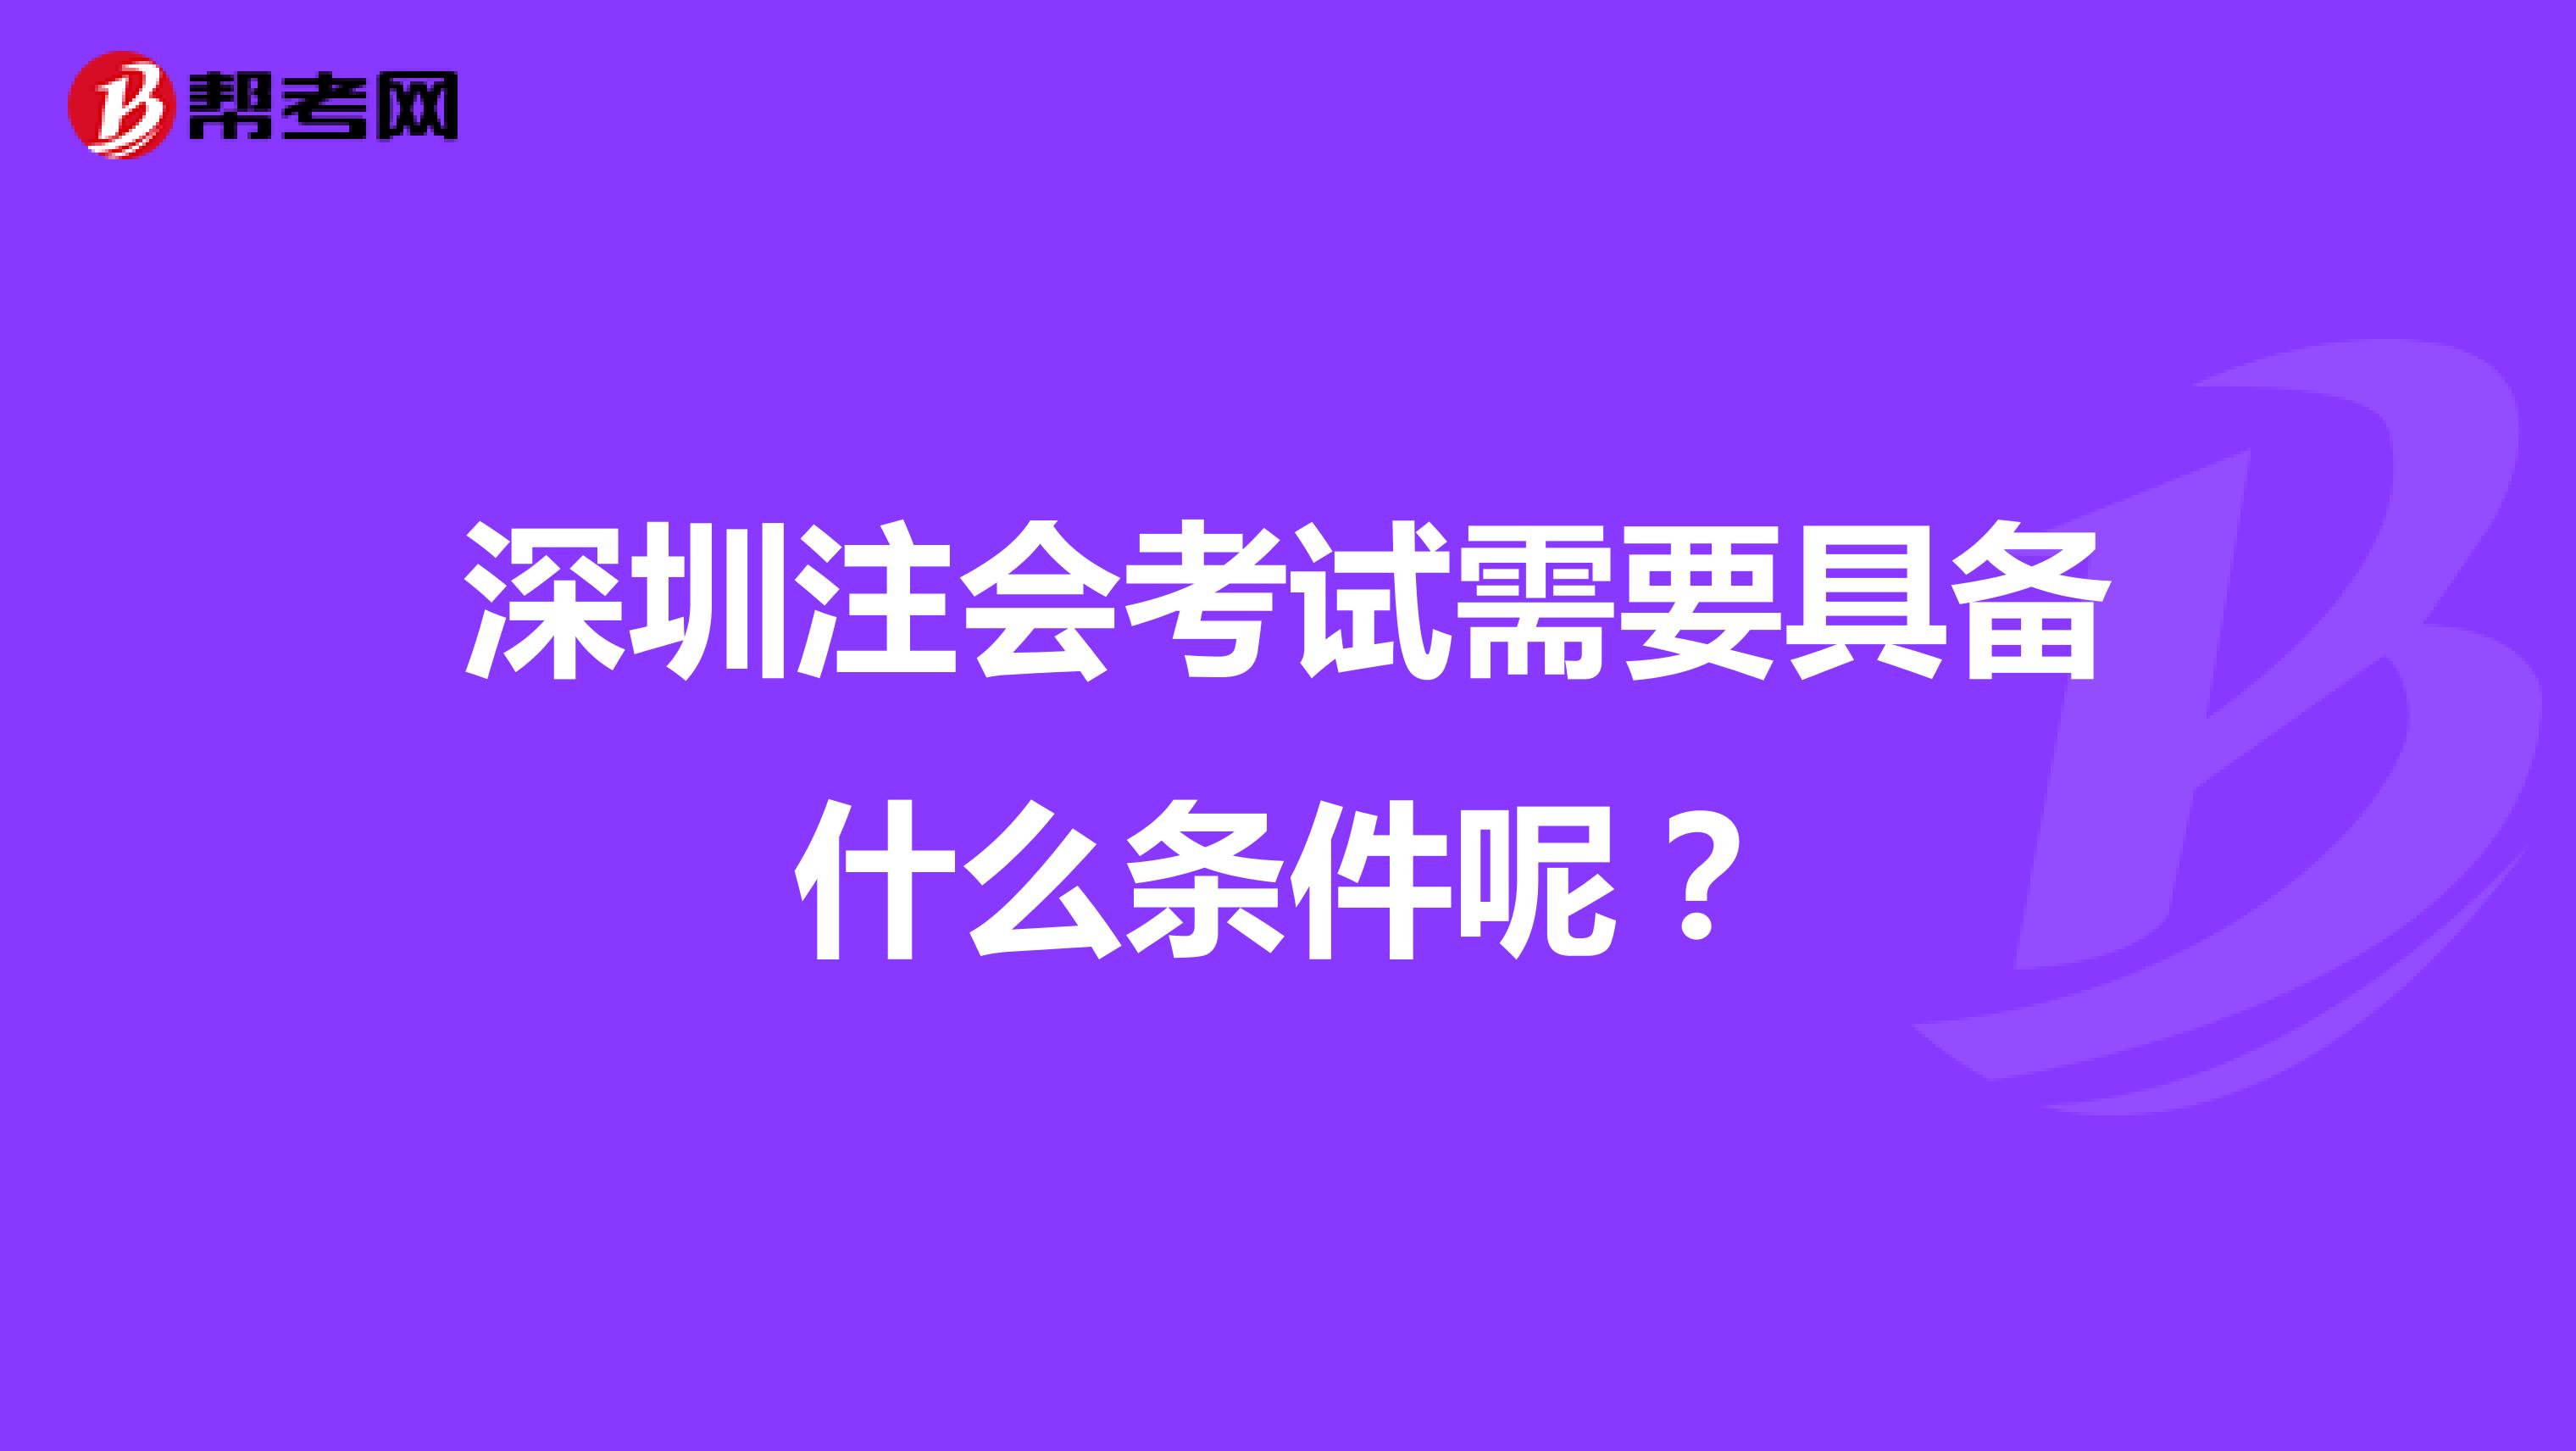 深圳注会考试需要具备什么条件呢？